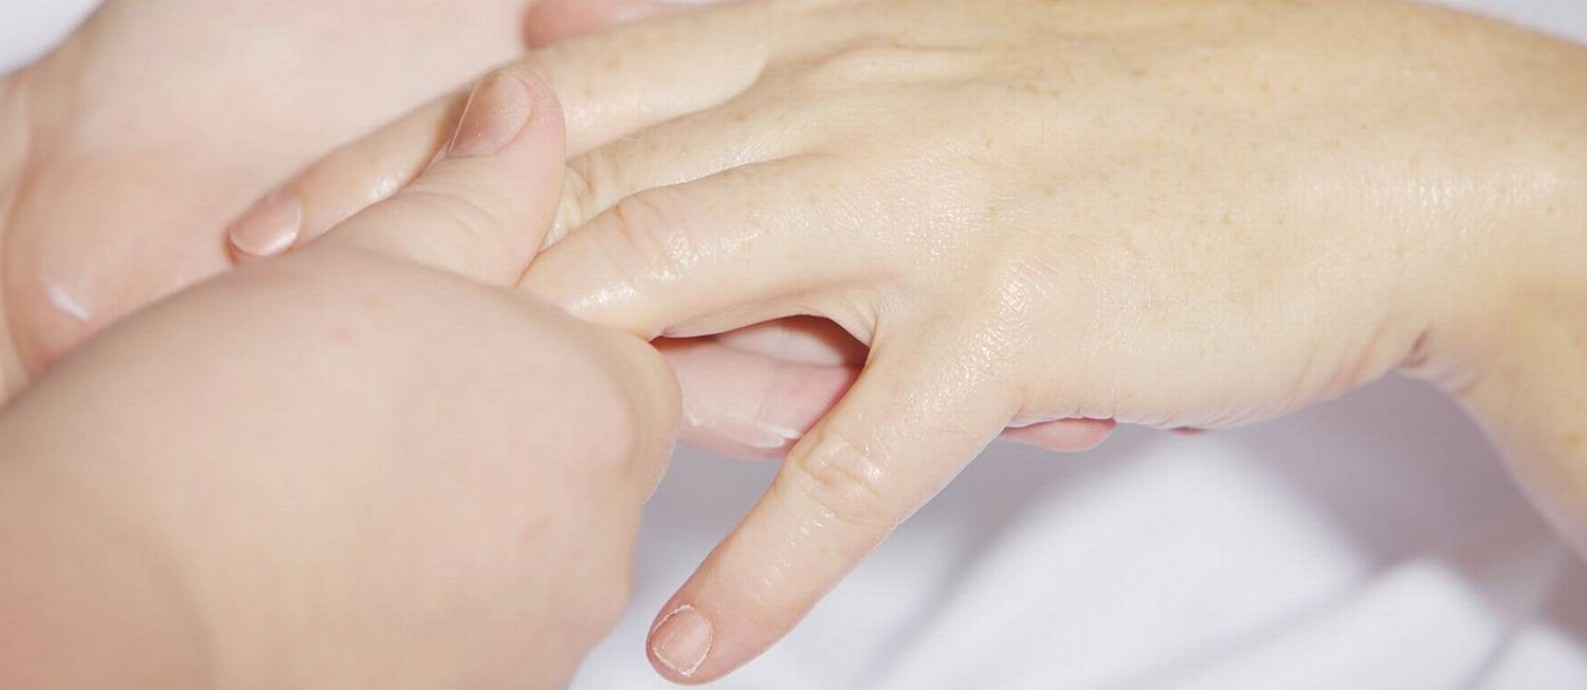 Os sintomas da dermatite também aparecem nas extremidades, como mãos e pés Foto: Pixabay/Pixabay